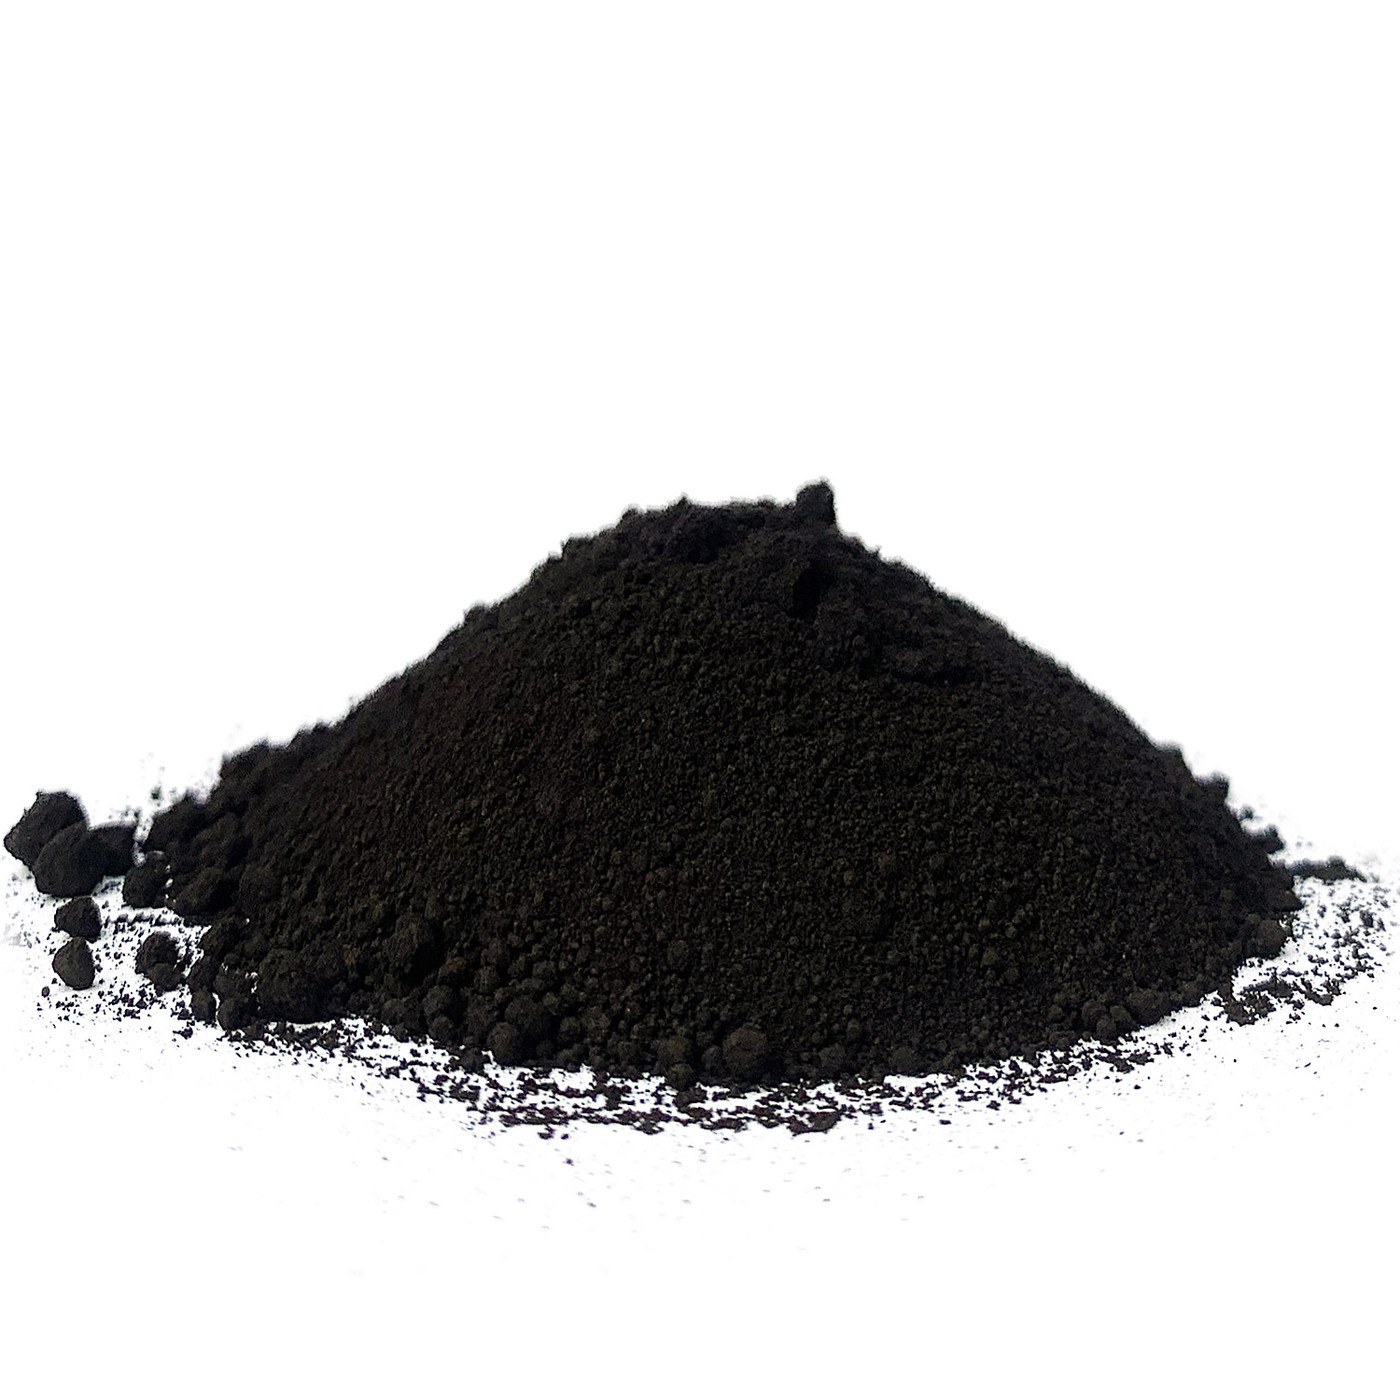 Копоти и пыли. Пигмент Iron Oxide Black 722 черный. Tongchem пигмент. Черный пигмент Tongchem. Пигмент черный КНР 722 25 кг.